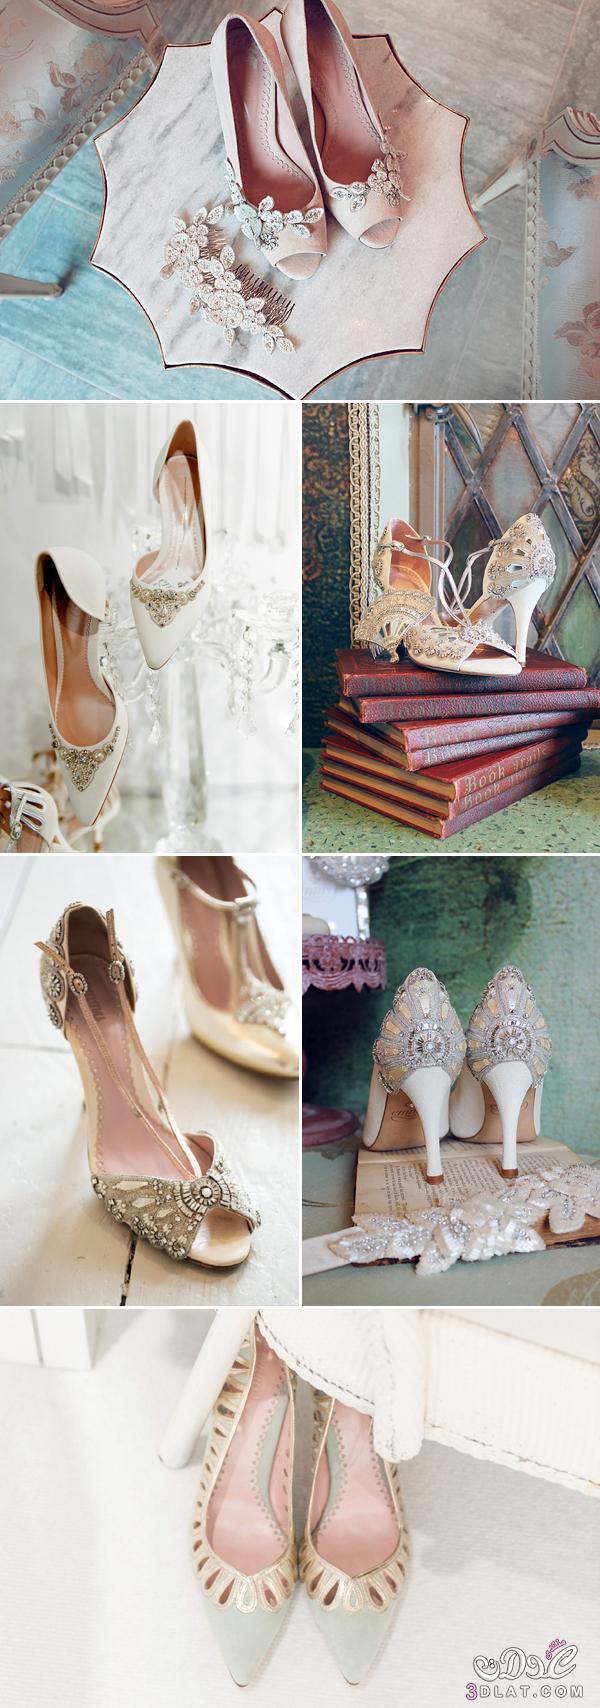 كولكشن مميز ومتنوع من احذيه العروس ، مجموعه من احذيه الكعب العالي الساحره ستبهرك